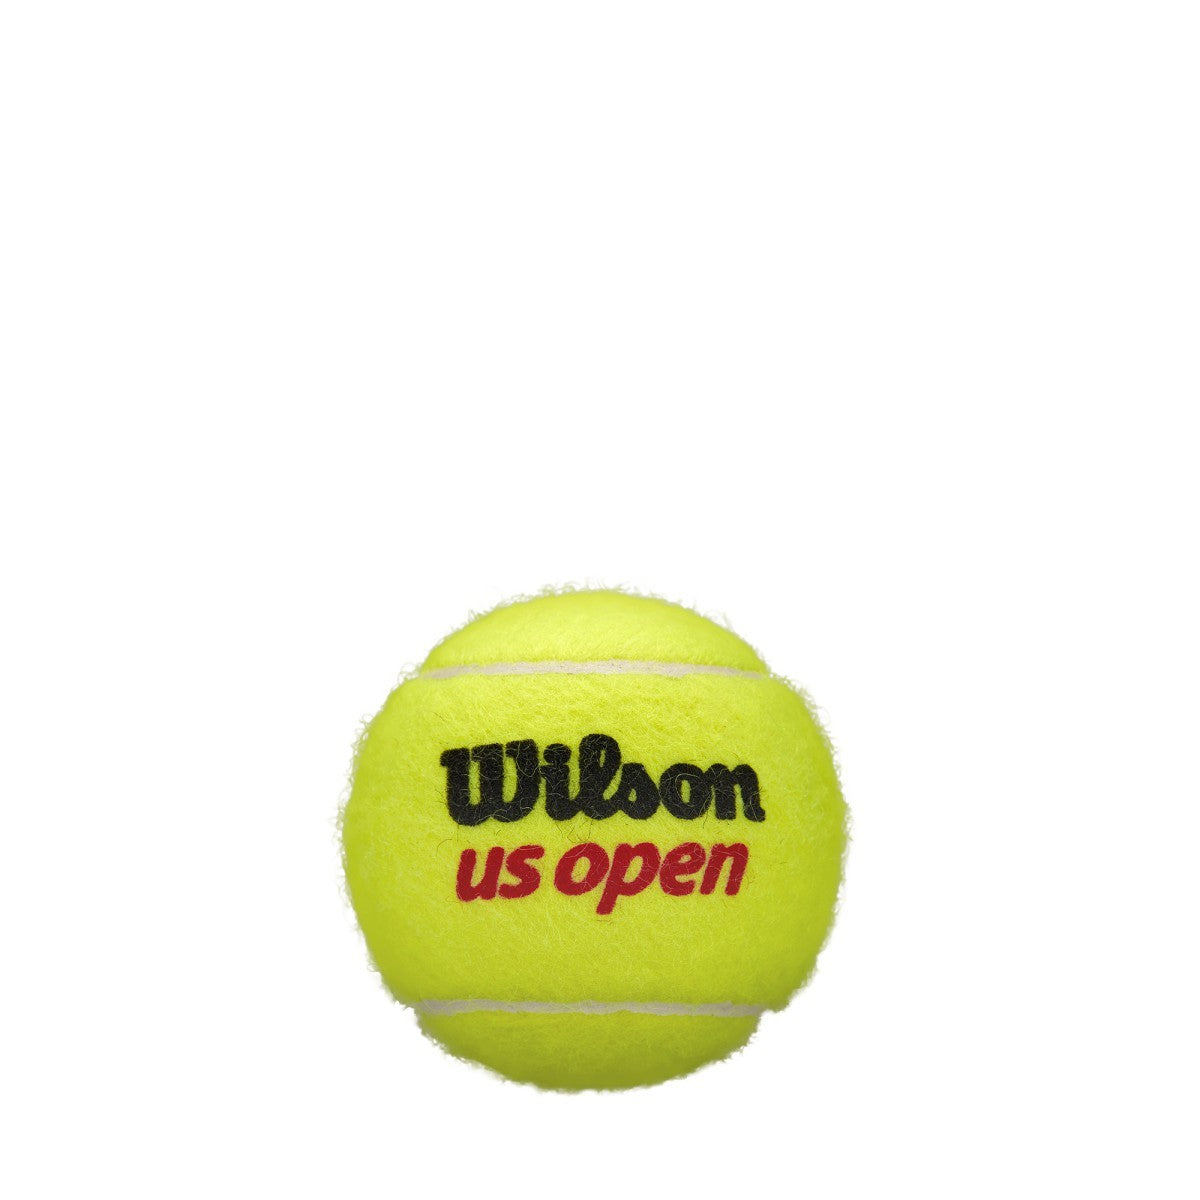 Wilson US Open Extra Duty Tennis Balls - 4 ball can